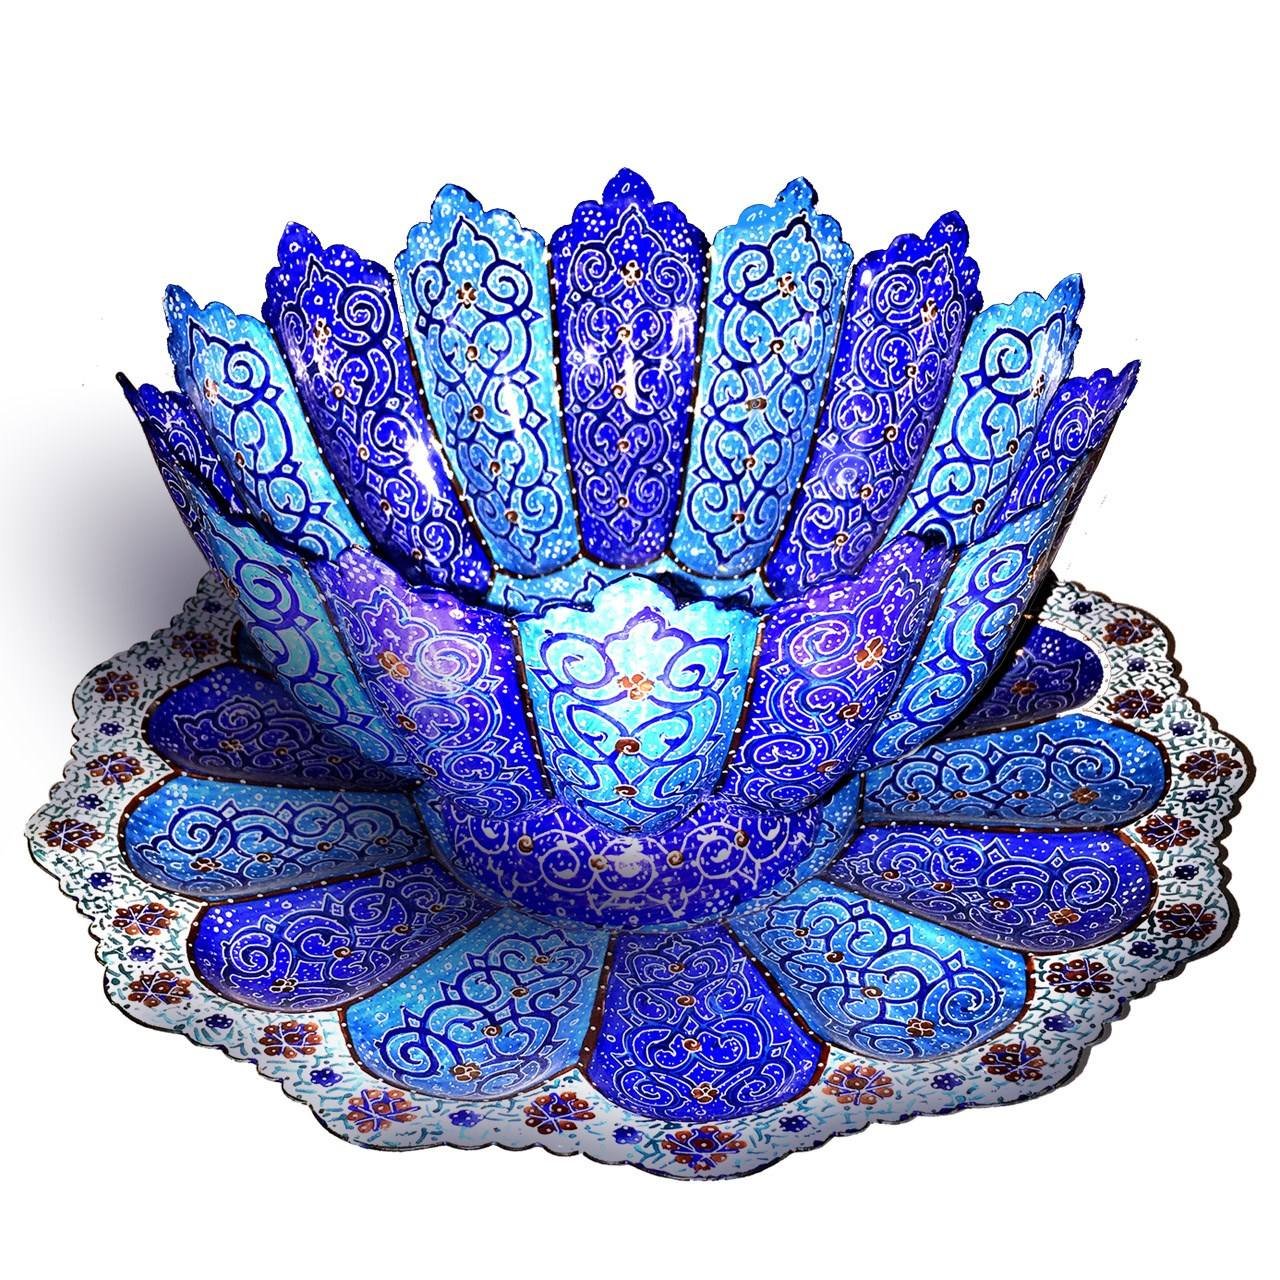 Enamel Handicraft copper dish and bowl design mina eshgh model KB-1,acheter émail bleu,acheter émail traditionnel,acheter plats,assiettes de décoration